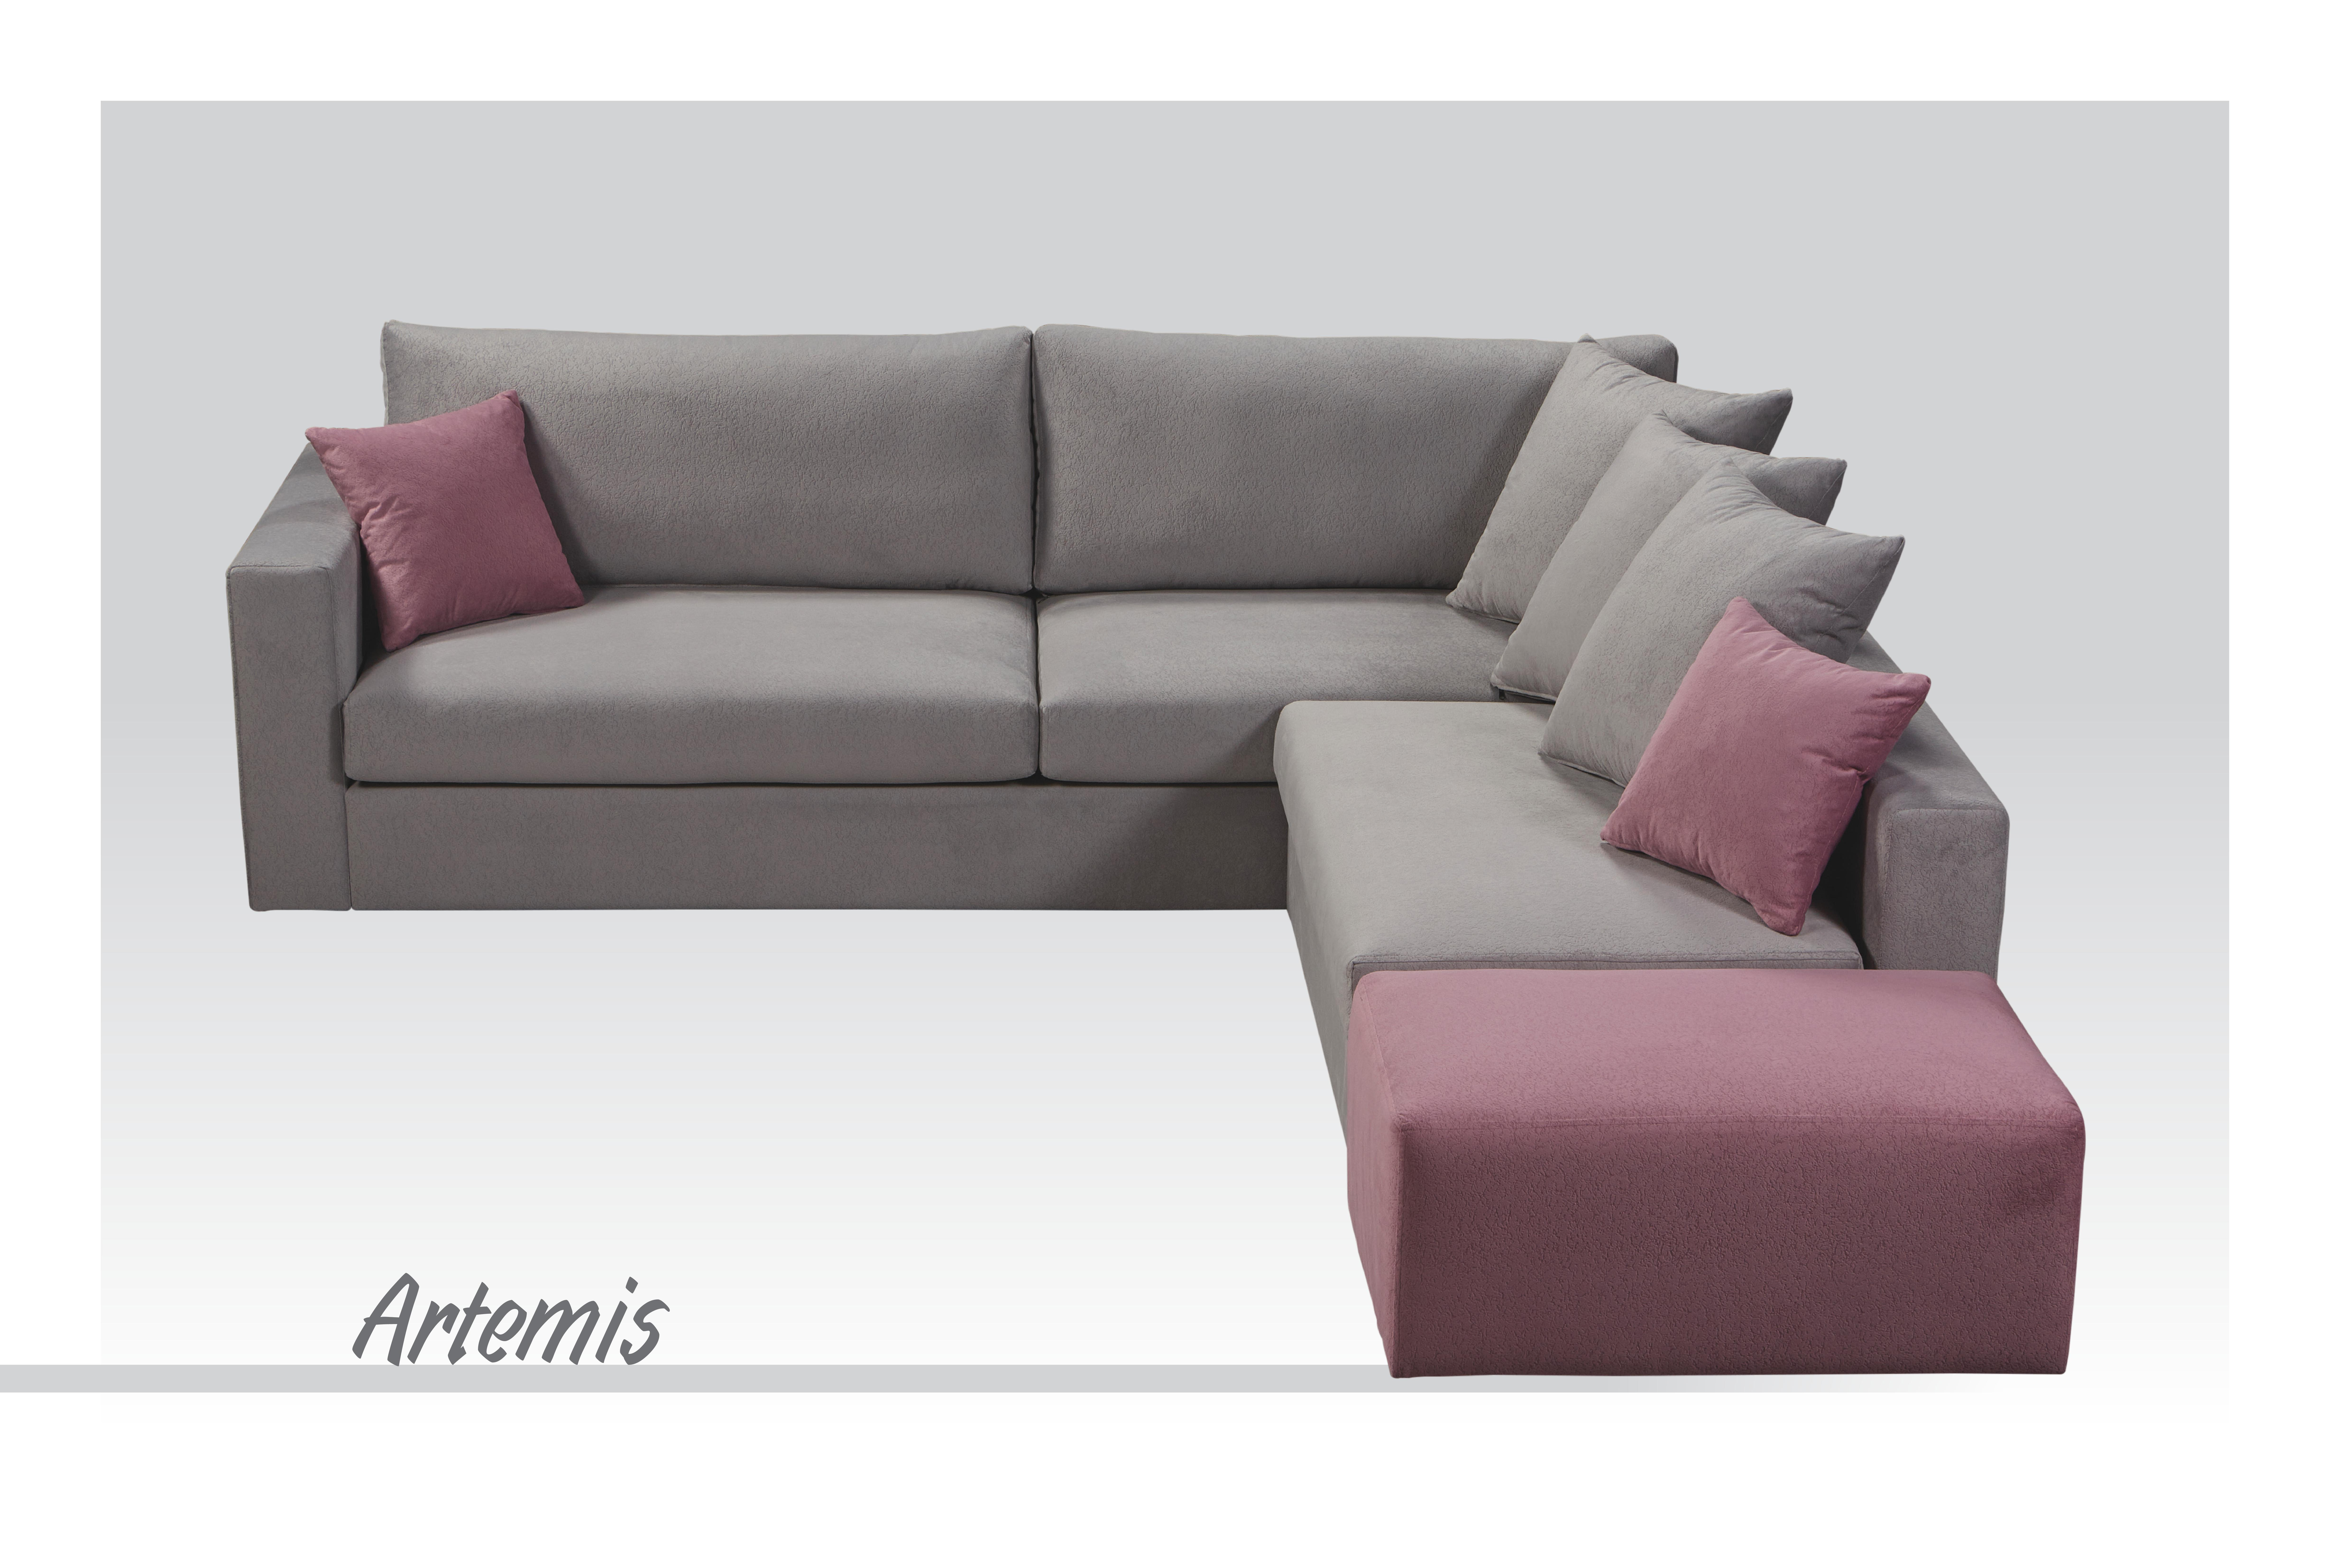 Corner Sofa "Artemis"